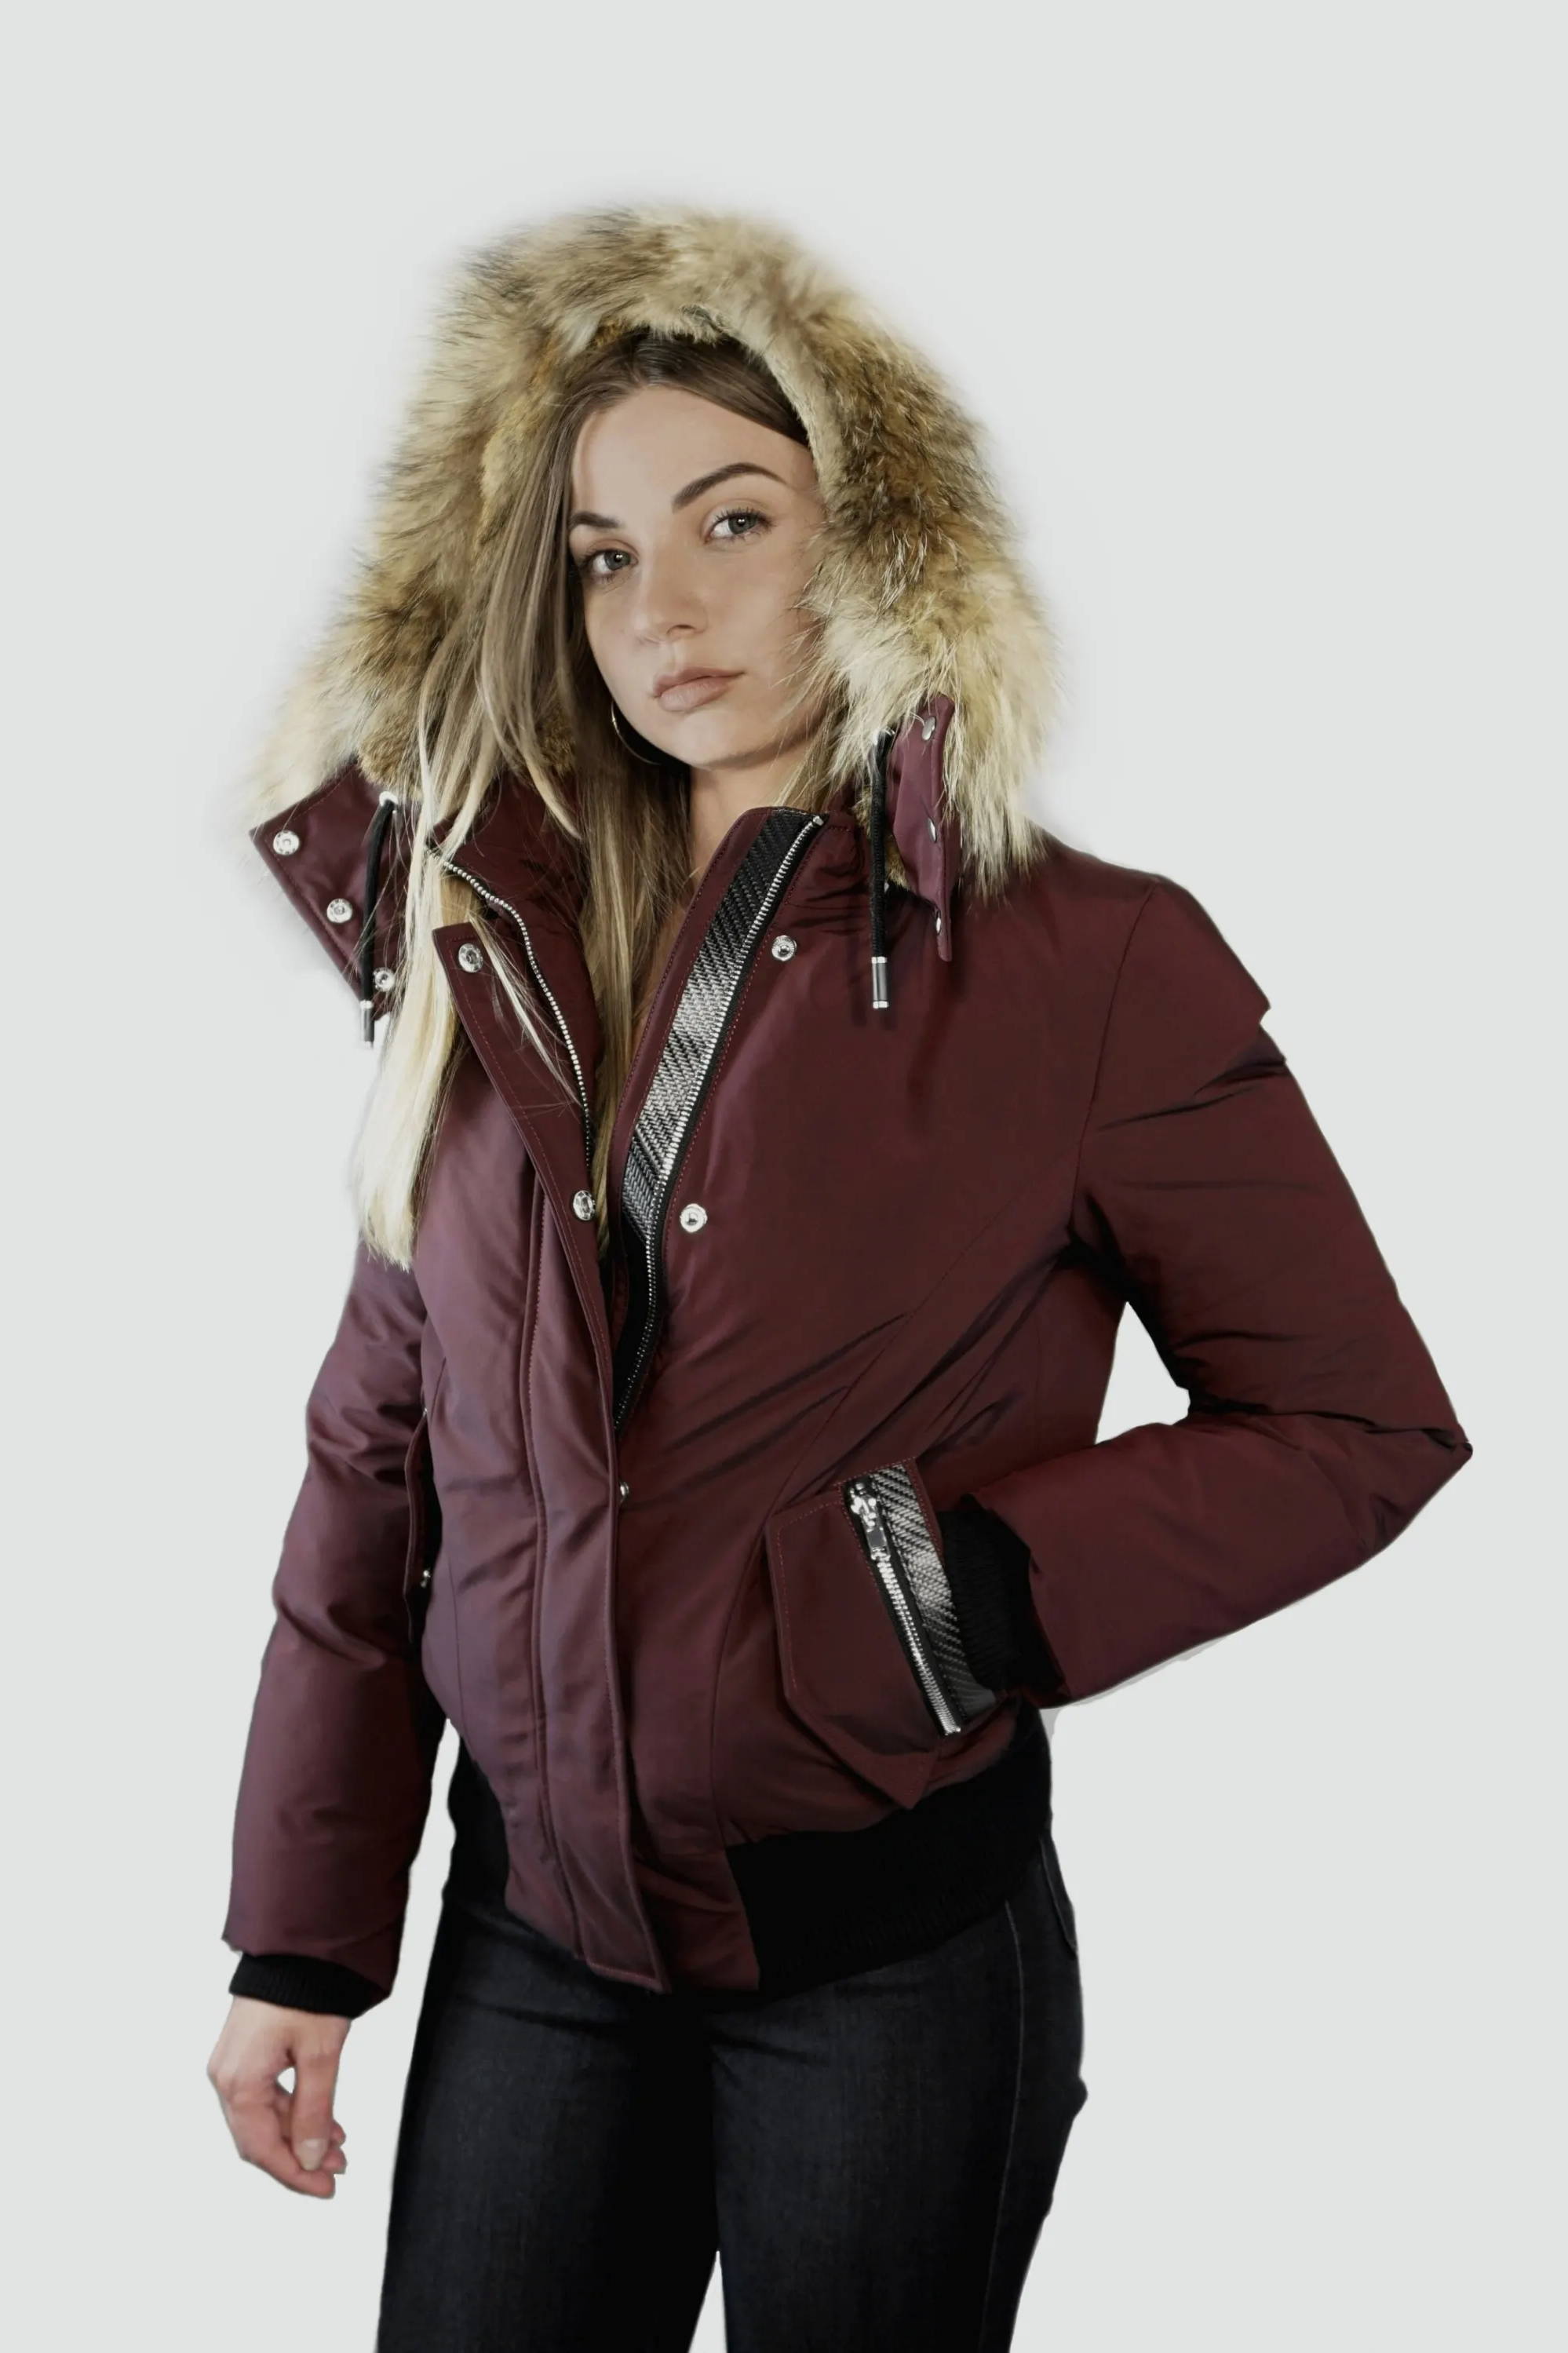 Women's Winter Jackets: Bomber Jackets, Down Jackets, Biker